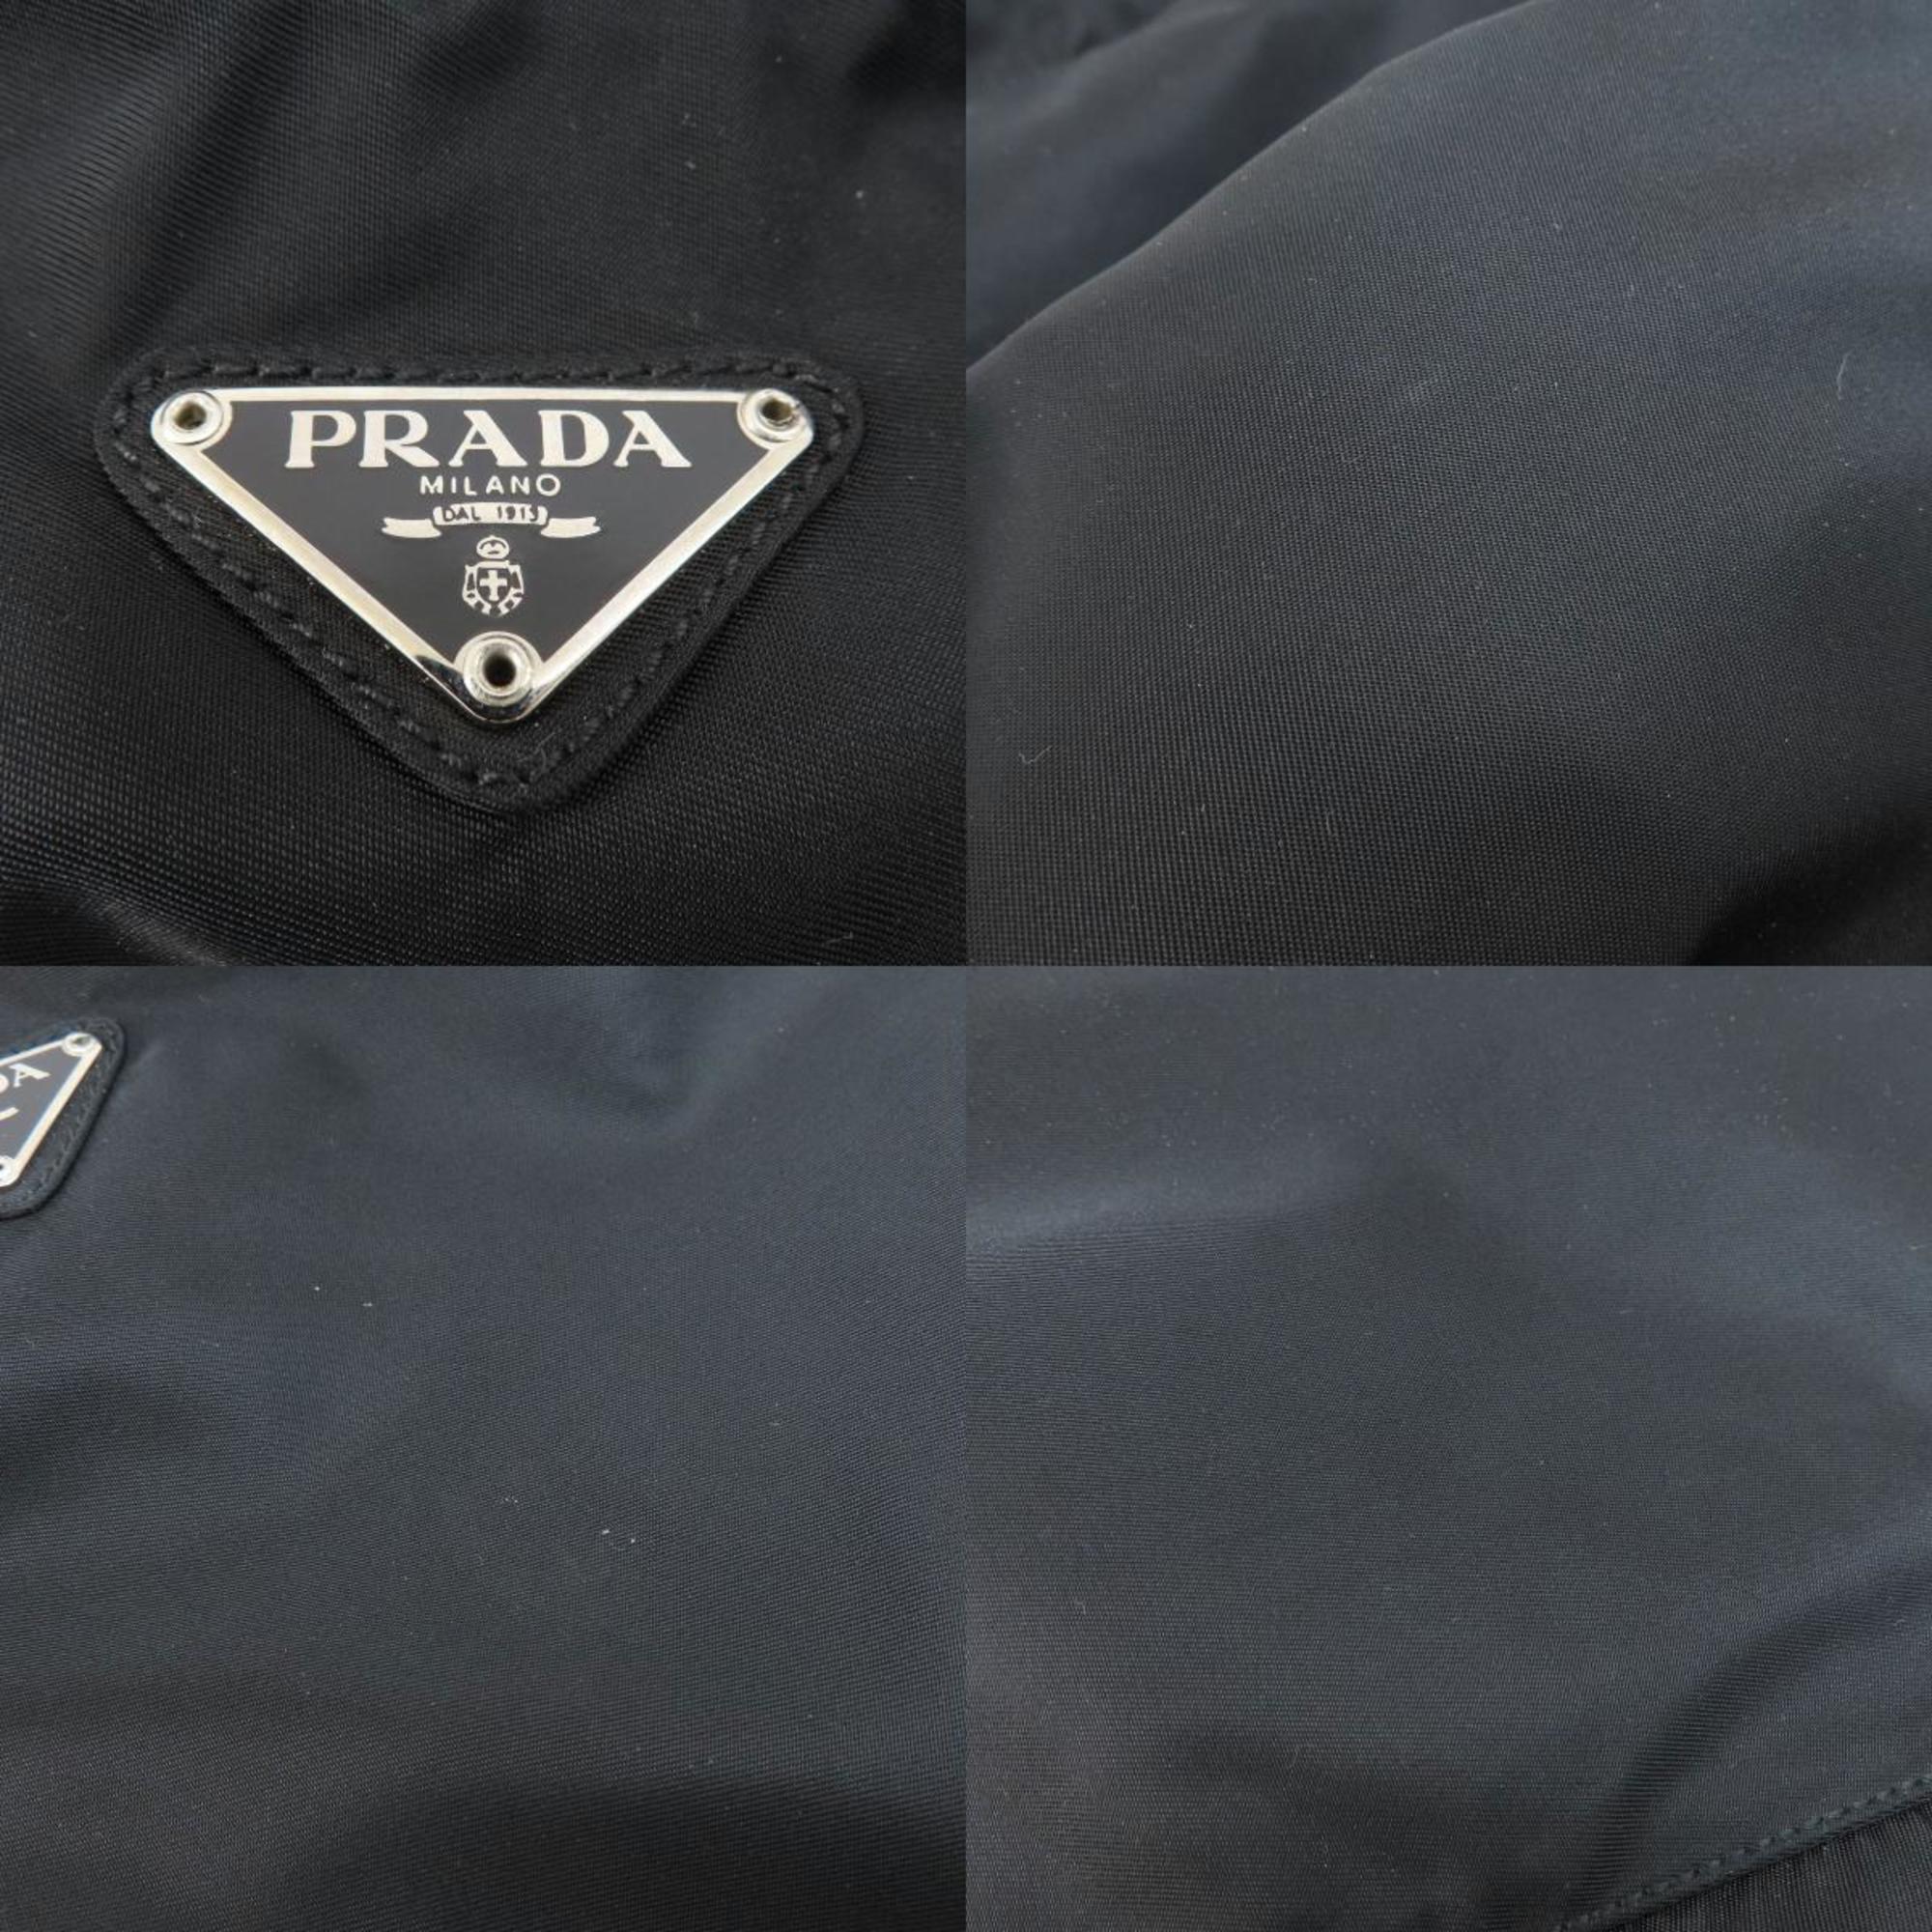 Prada metal fittings handbag nylon material women's PRADA